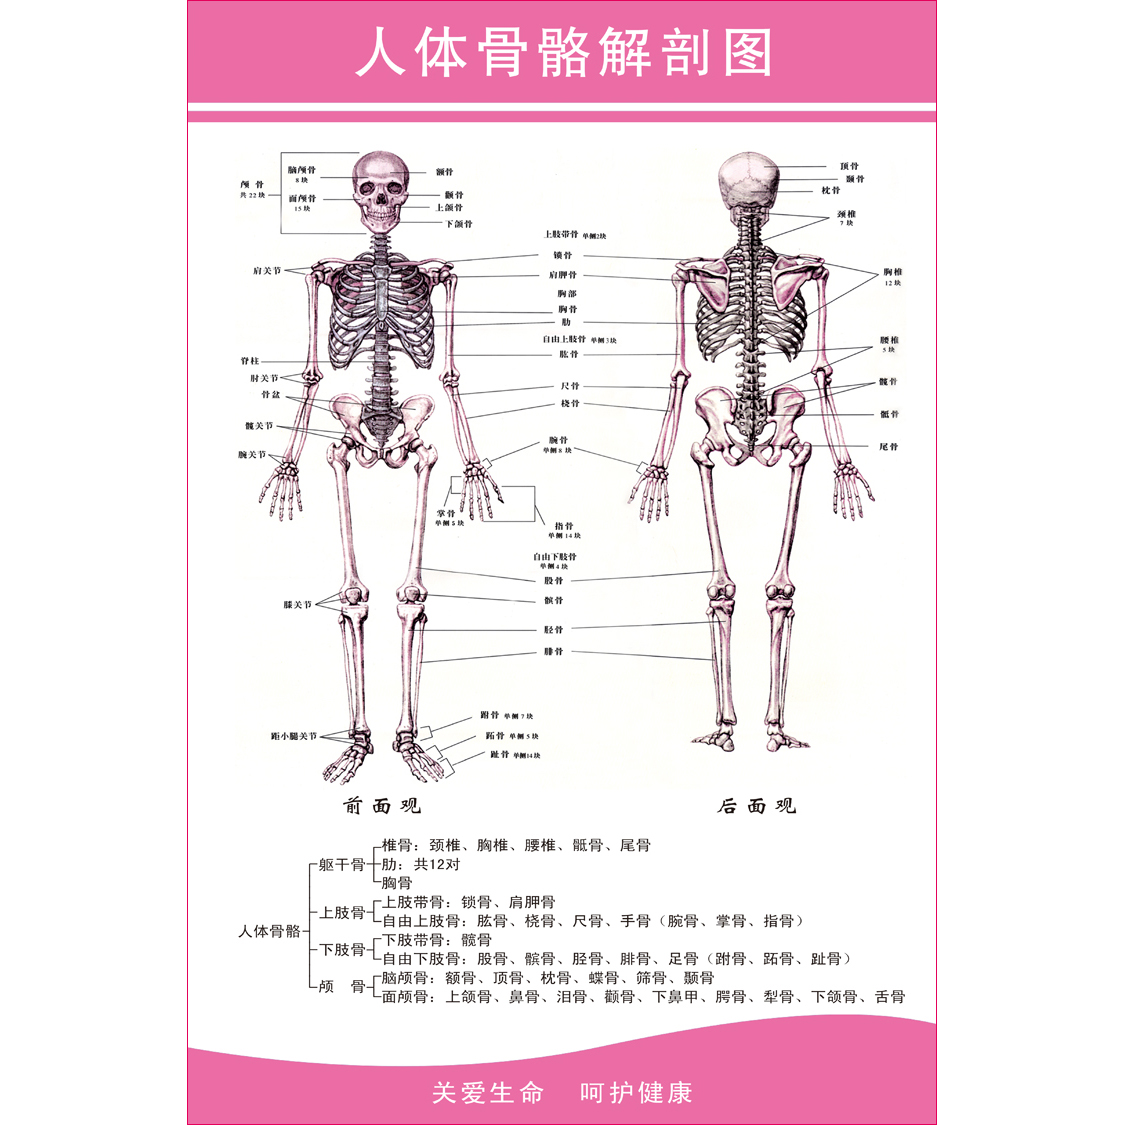 人体全身骨骼结构解剖图 肌肉结构解剖示意图 医院解剖挂图展板